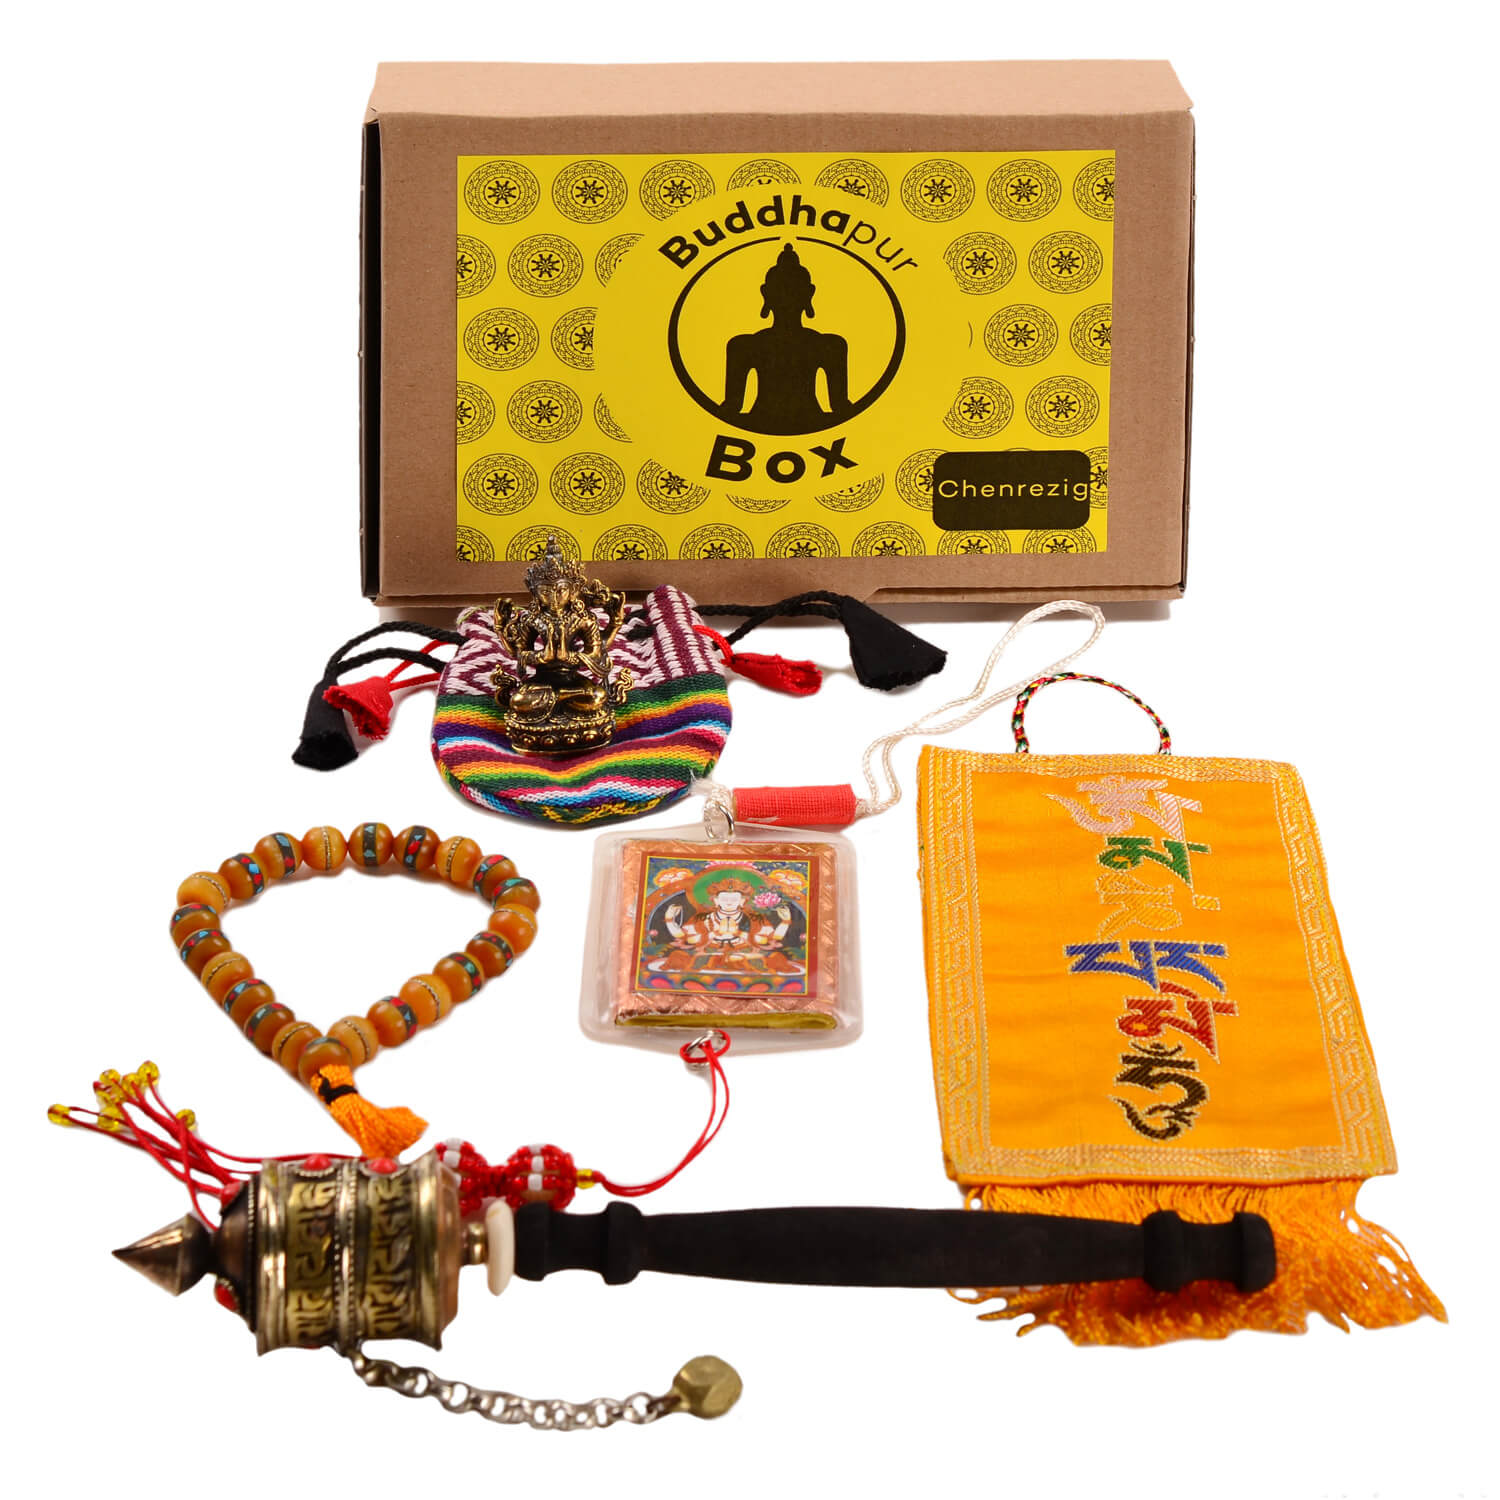 Buddhapur Box Chenrezig: Inhalt vor Verpackung